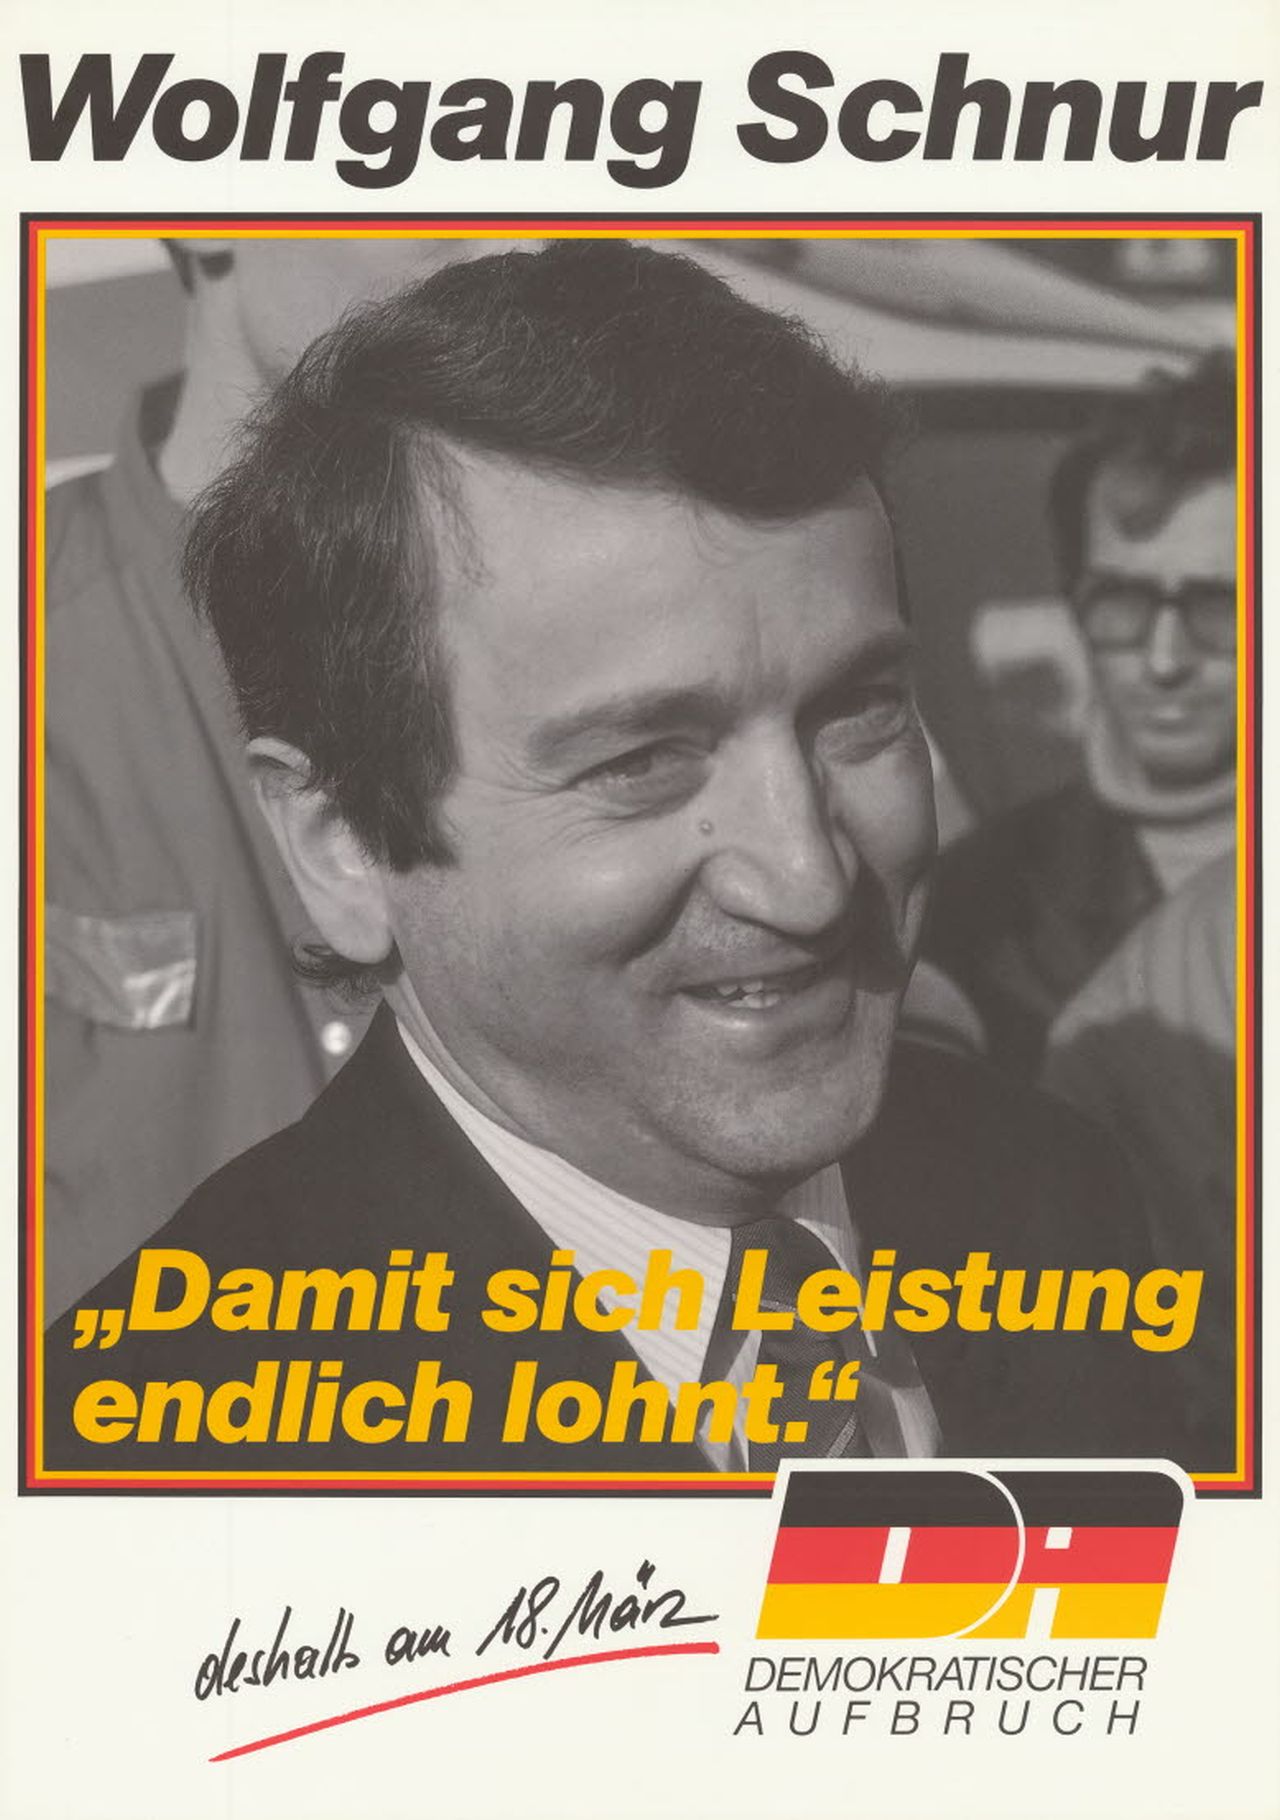 Das weißgrundige Plakat zeigt in einer schwarzrotgoldenen Umrandung ein Porträt des Kandidaten des Demokratischen Aufbruchs, Wolfgang Schnur. Darüber steht: 